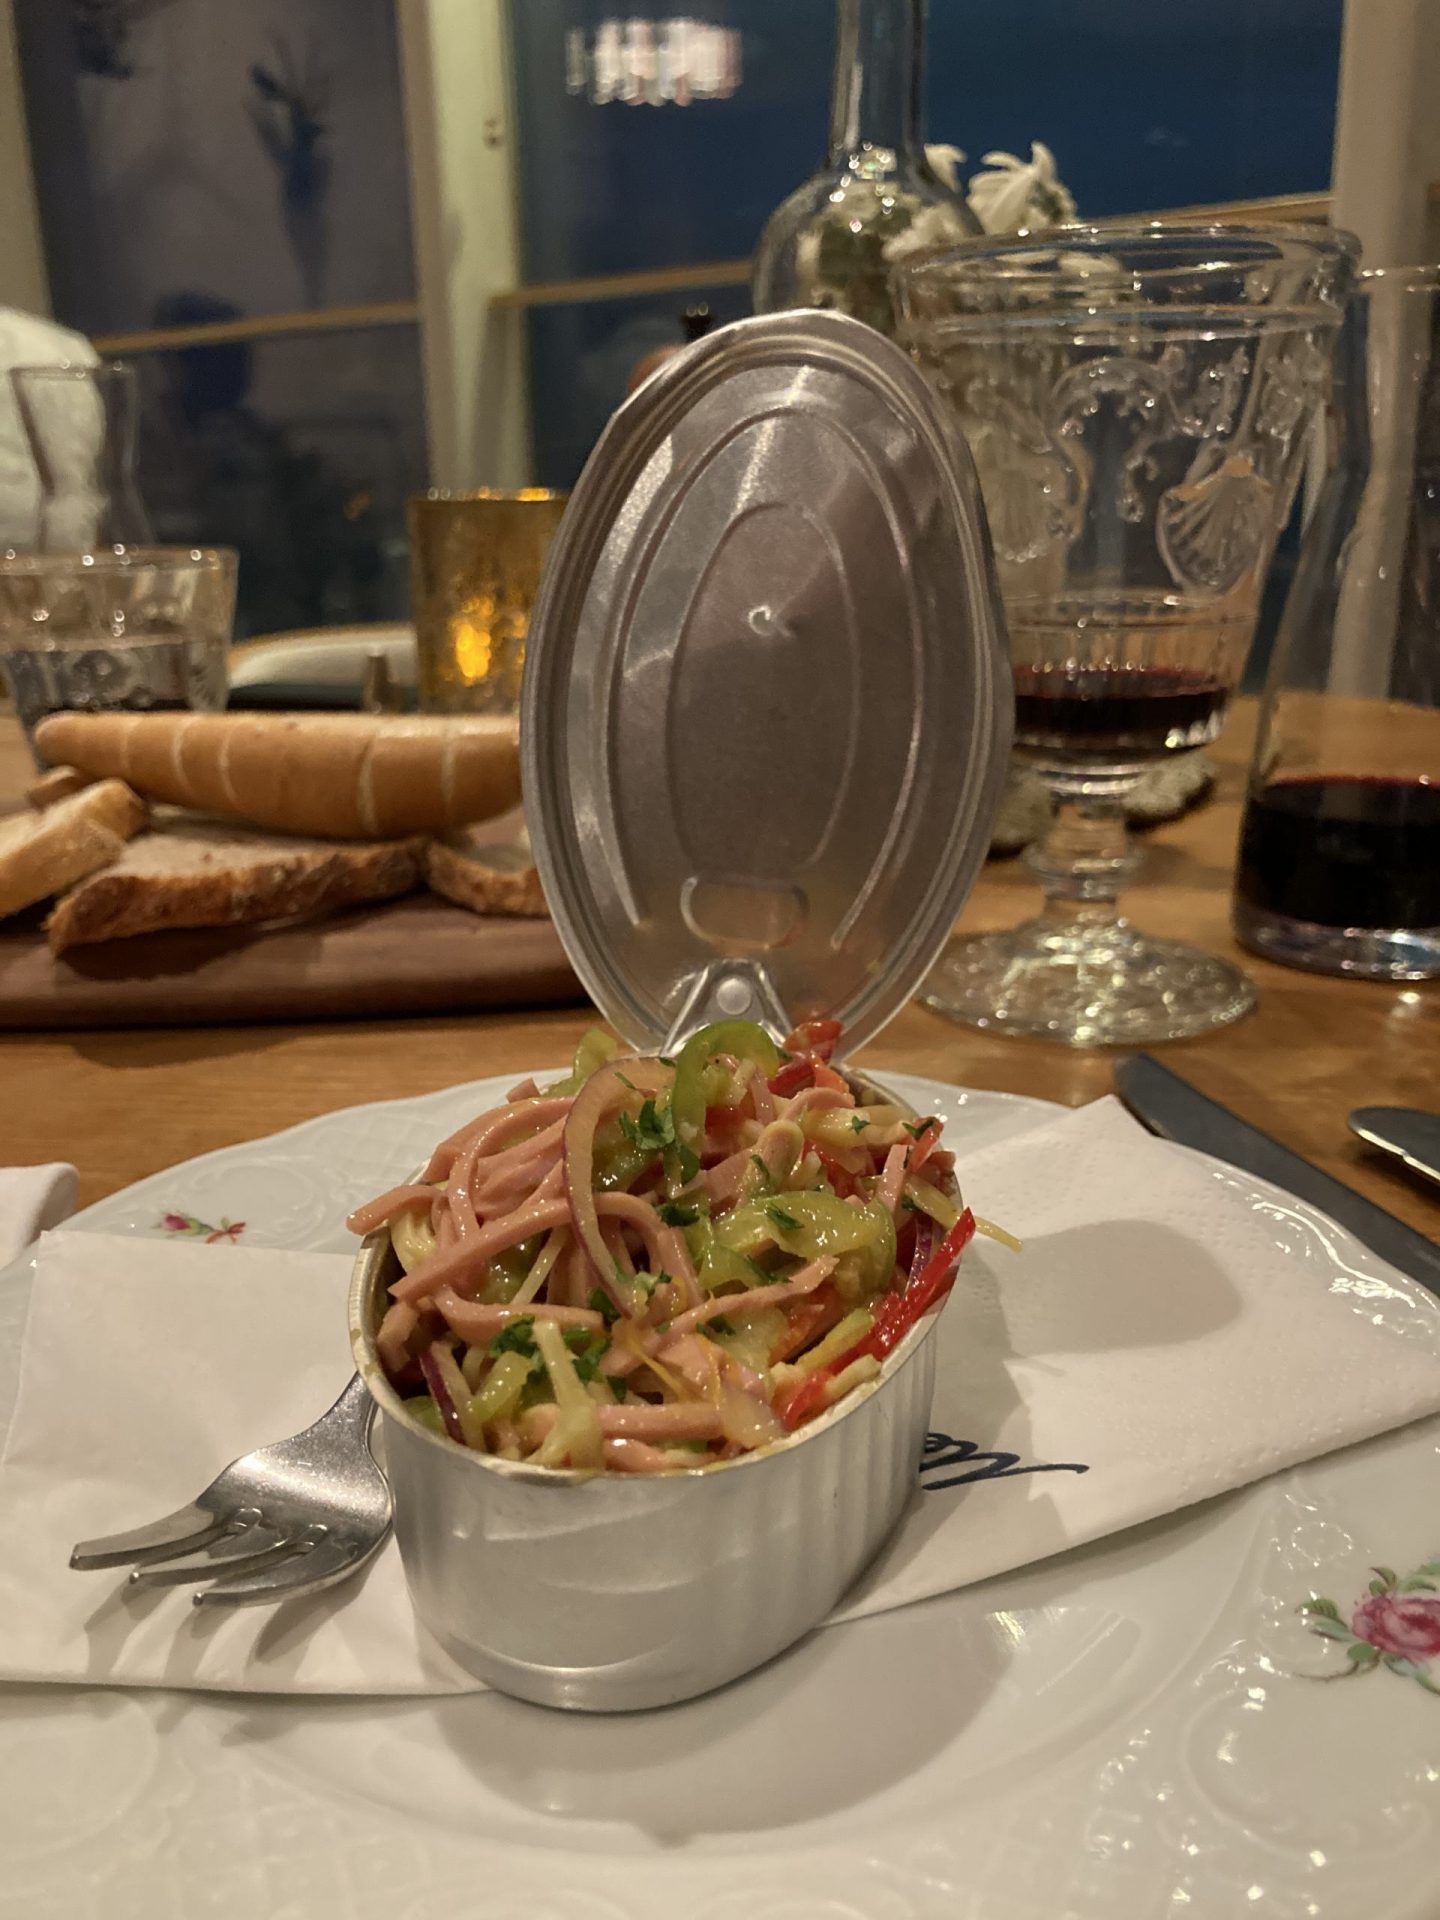 Erfahrung Bewertung Kritik Restaurant Schmankerl TUI Cruises Mein Schiff 5 Wurstsalat Foodblog Sternestulle